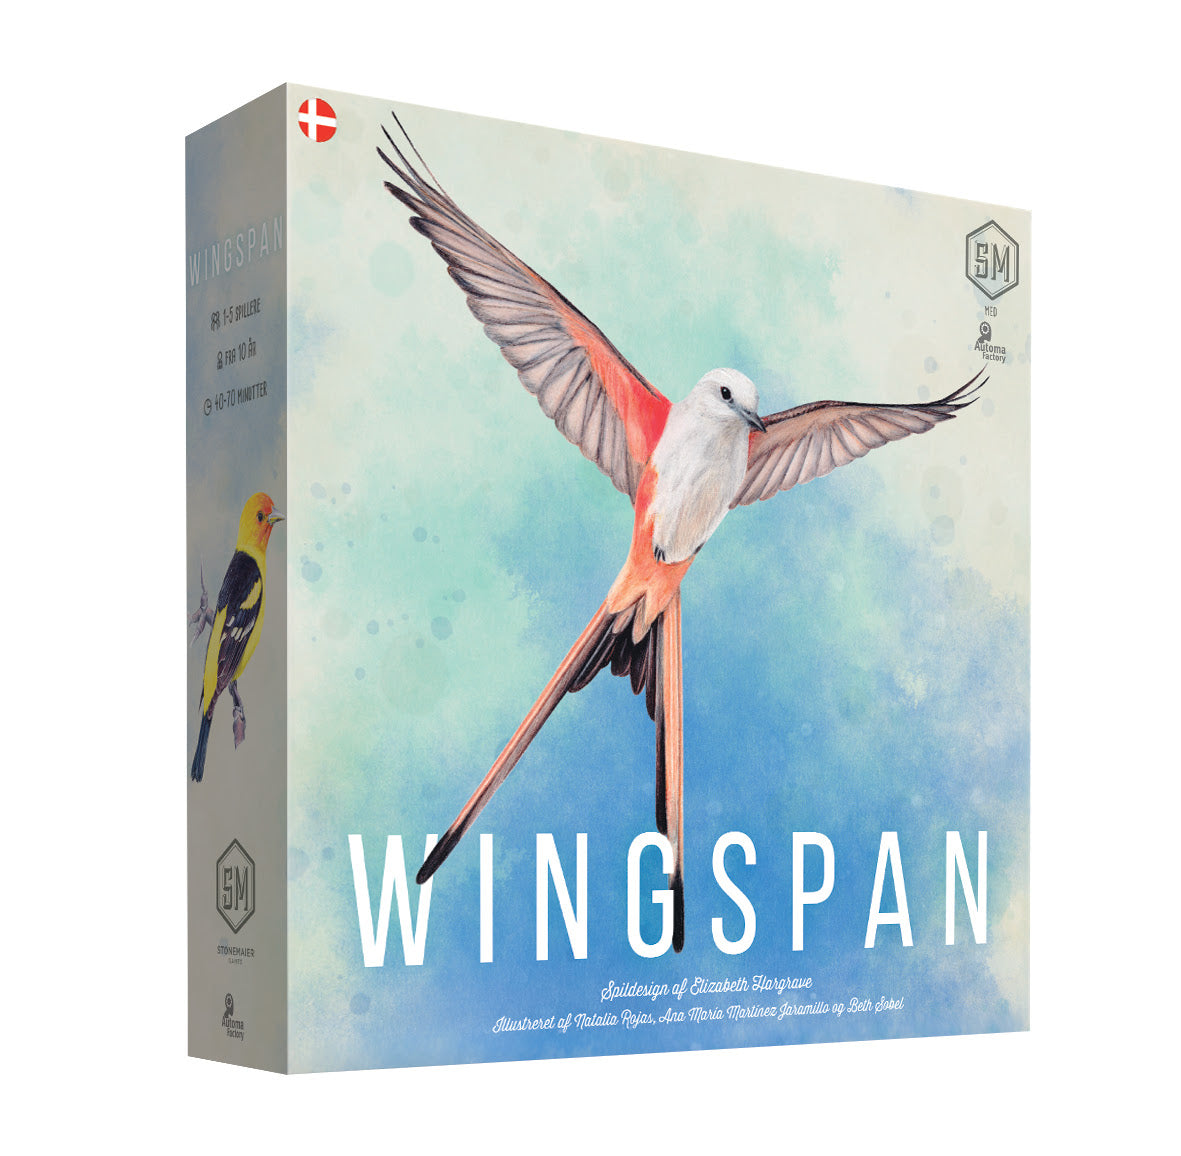 Wingspan - På Dansk brætspil